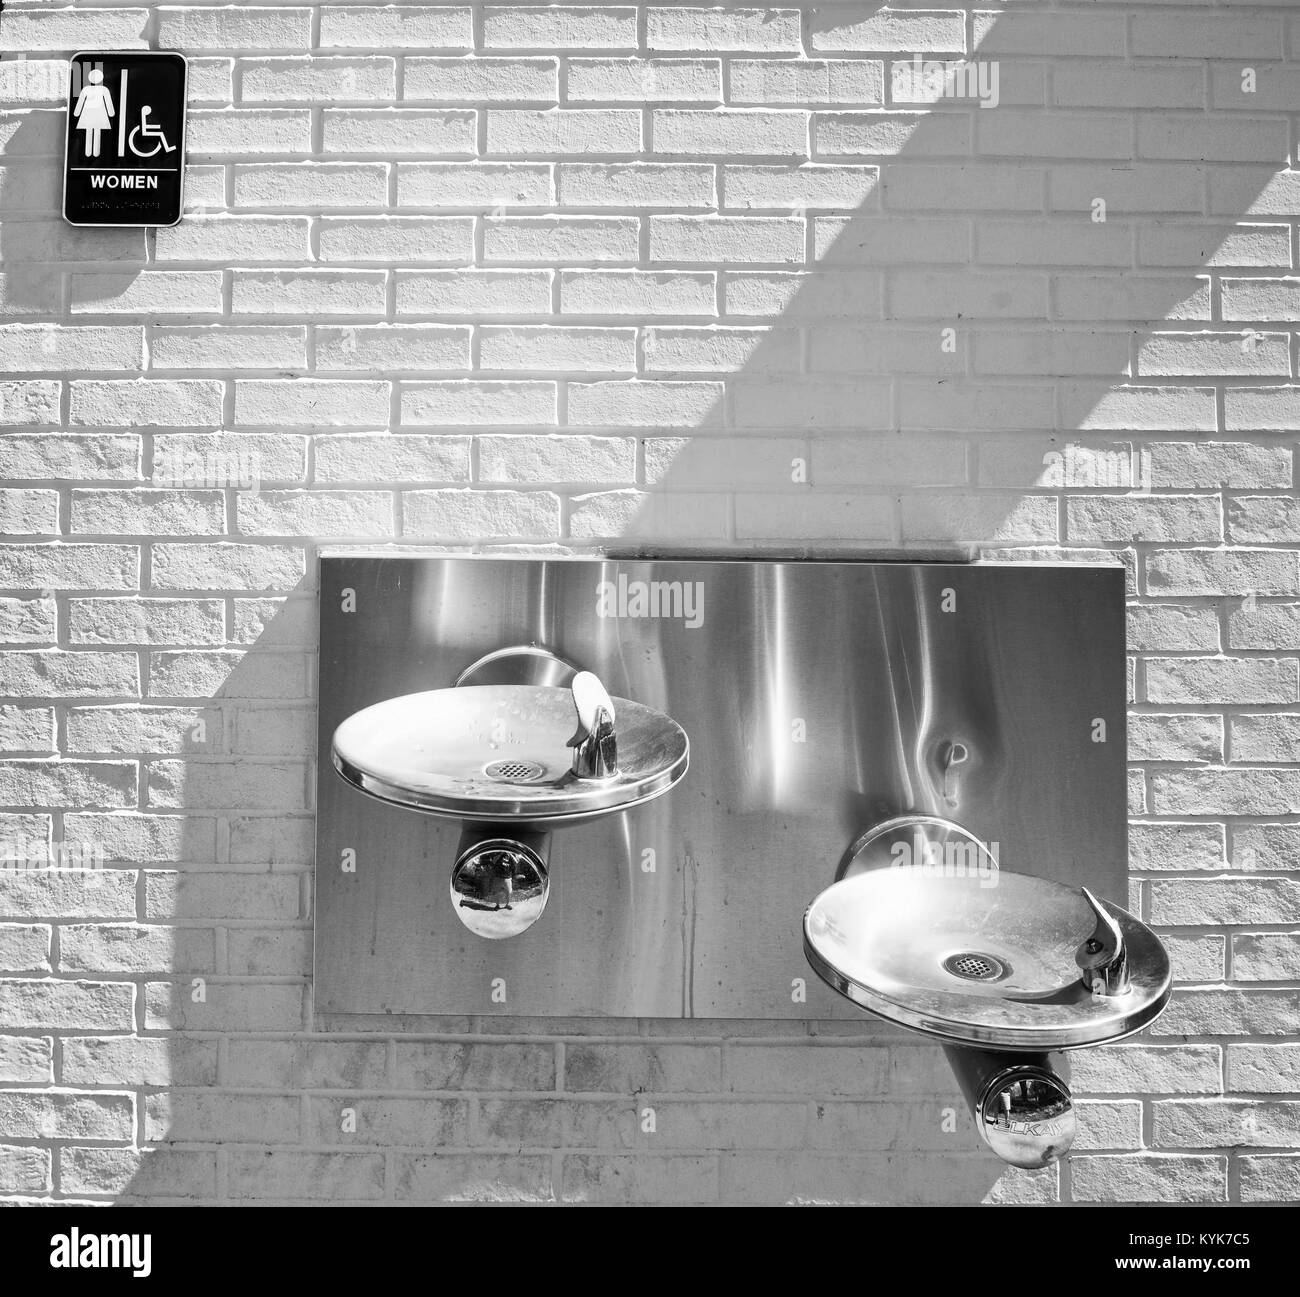 Springbrunnen und Frauen Toilette in Schwarz und Weiß. Stockfoto